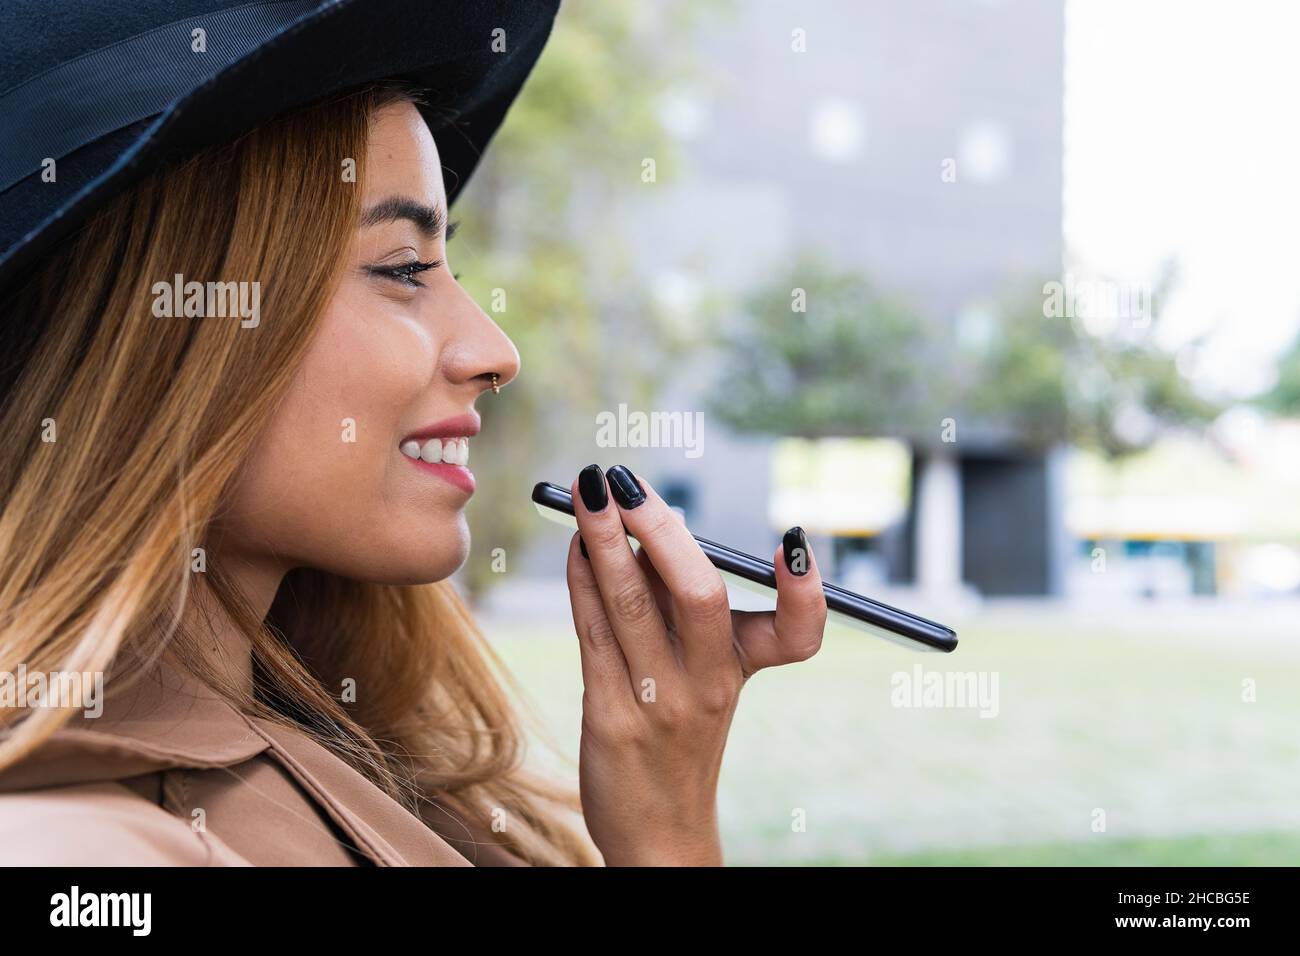 Donna che indossa un cappello che invia la segreteria telefonica tramite smartphone Foto Stock